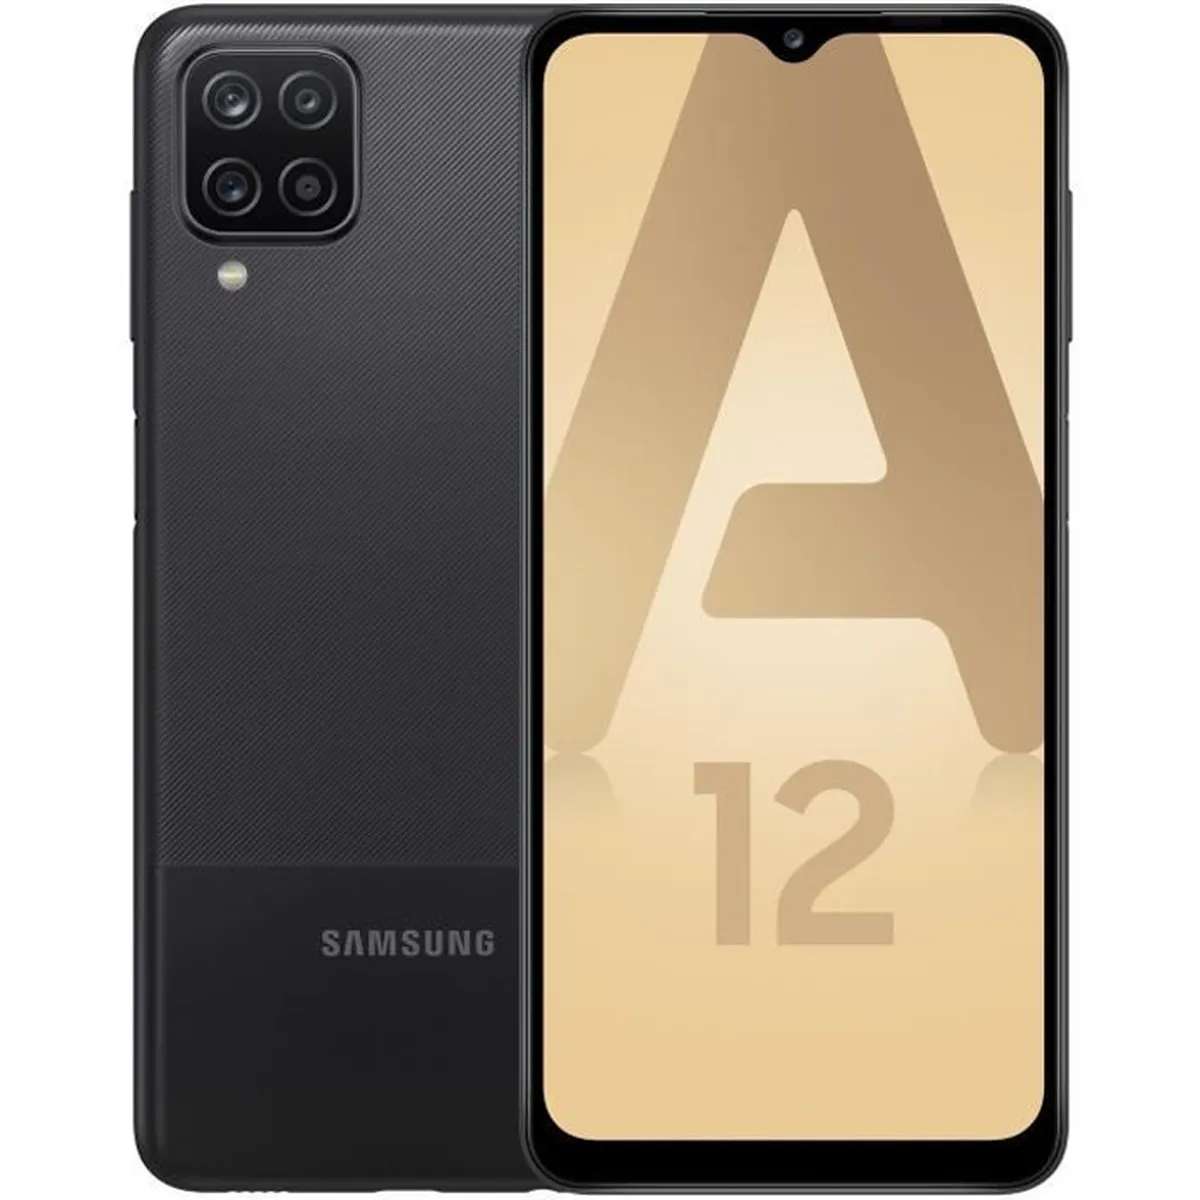 Buon piano: lo smartphone Galaxy A12 scende di quasi 200€